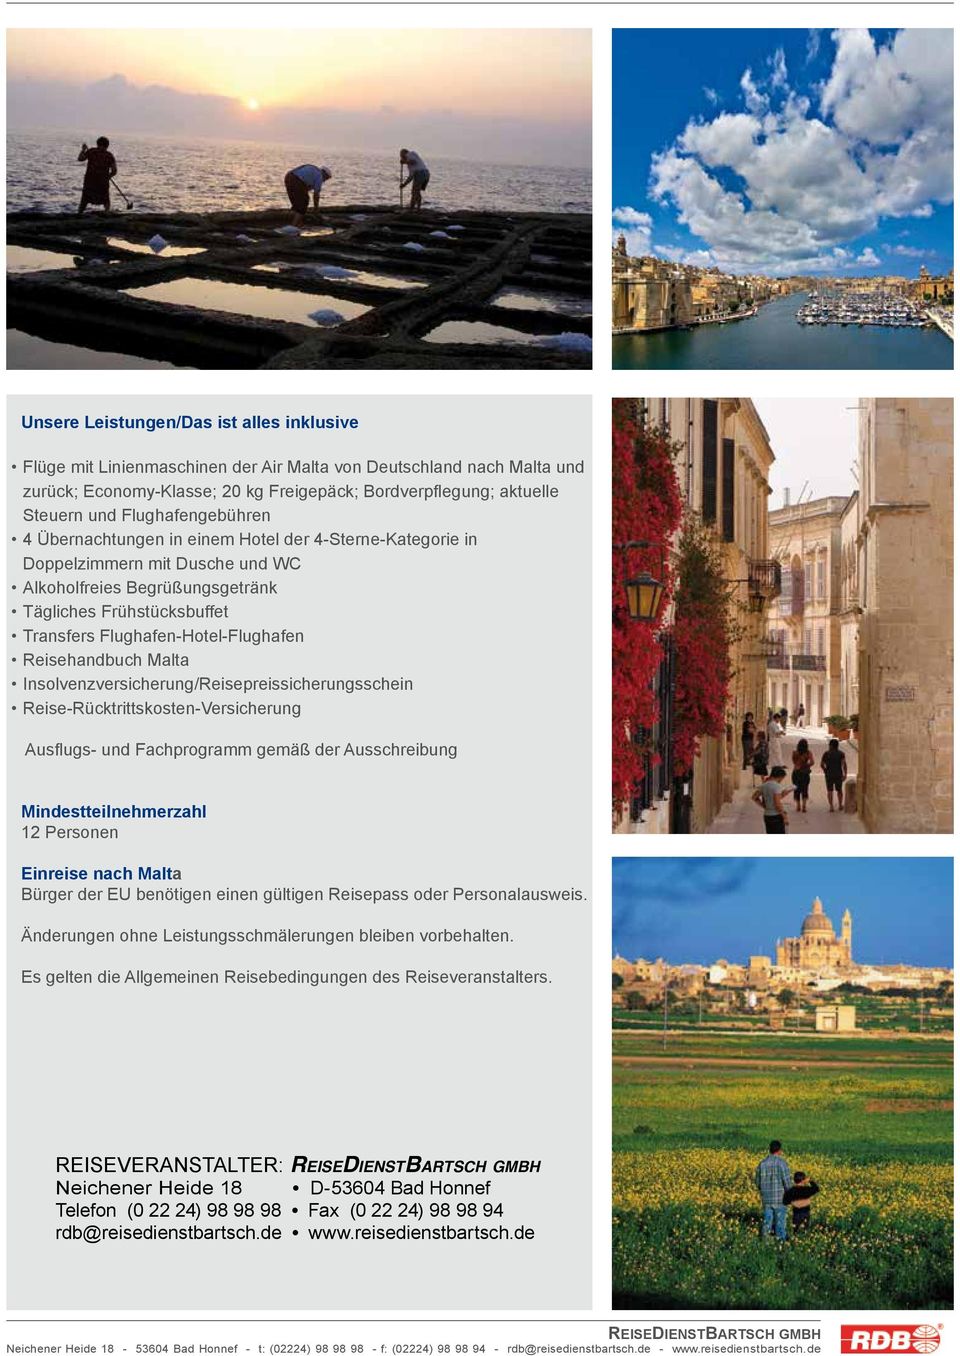 Flughafen-Hotel-Flughafen Reisehandbuch Malta Insolvenzversicherung/Reisepreissicherungsschein Reise-Rücktrittskosten-Versicherung Ausflugs- und Fachprogramm gemäß der Ausschreibung